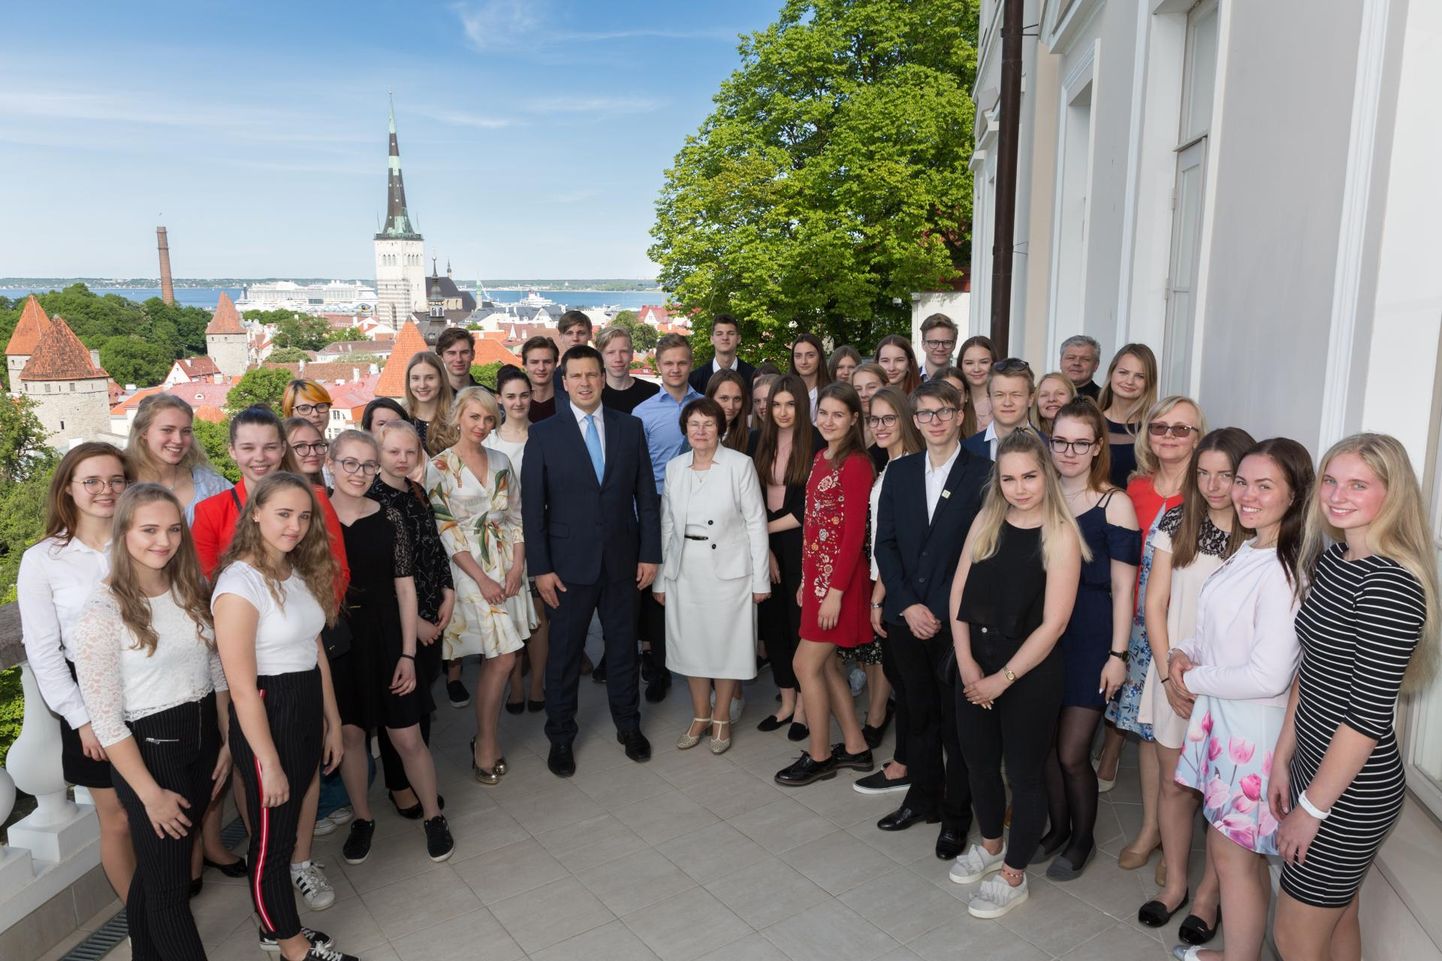 Parimate õpilasfirmade esindajad peaminister Jüri Ratase vastuvõtul FOTO: Vabariigi Valitsus